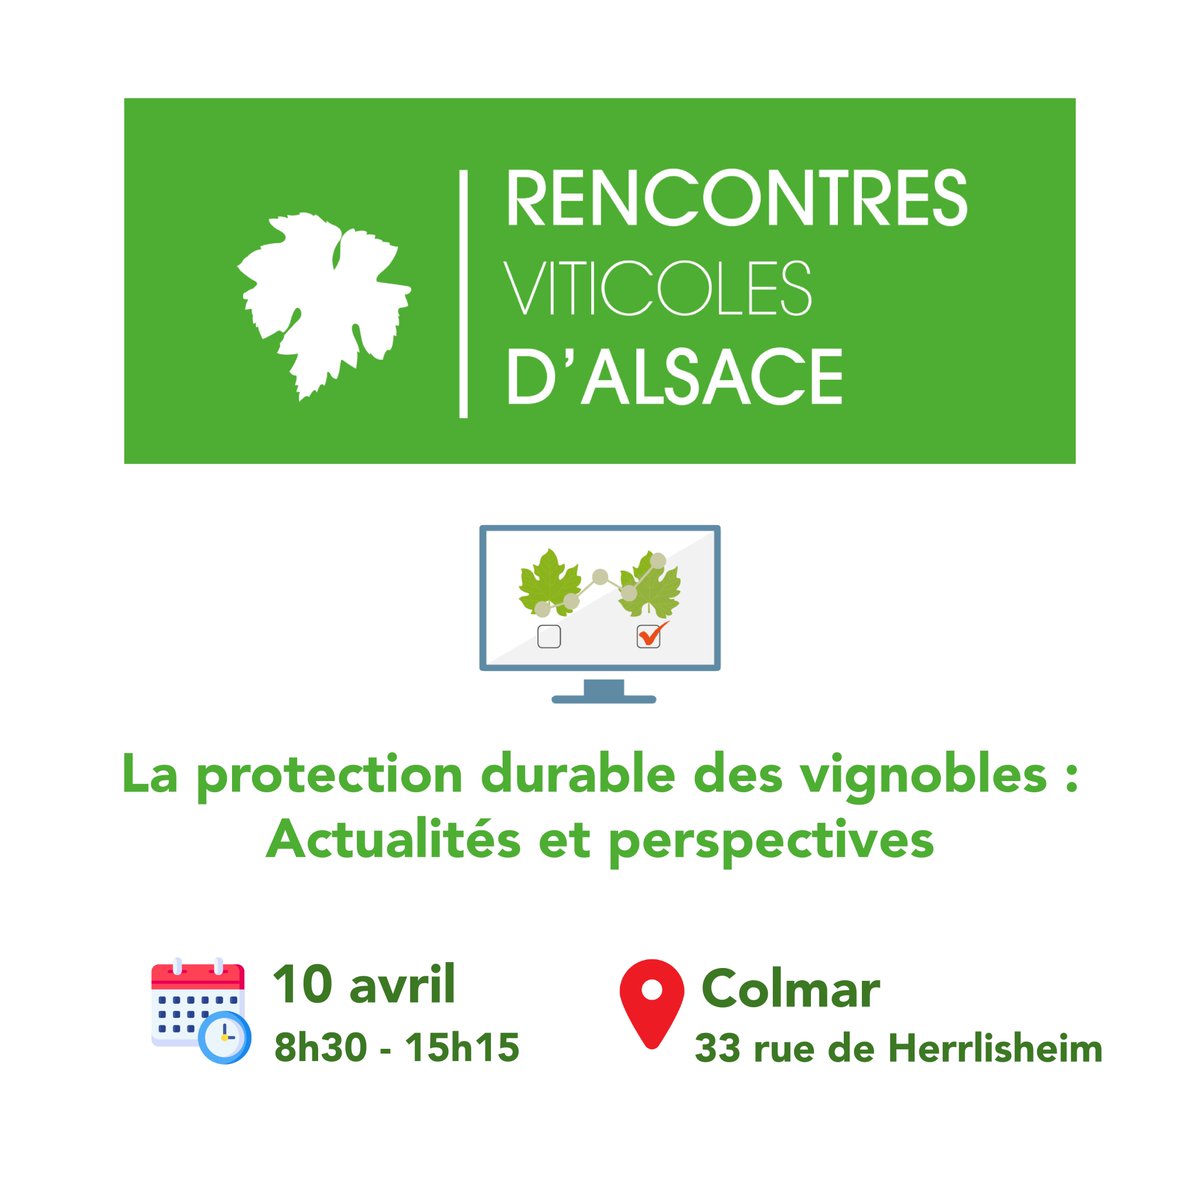 ⌛ N'oubliez pas de vous inscrire pour les Rencontres Viticoles d'Alsace 📅 10 avril 2024 🕣 8h30 - 15h15 📍 Université de Haute-Alsace, Colmar Découvrez le programme et inscrivez vous 👇 my.weezevent.com/rencontres-vit… #colloque #biocontrôle #OAD #protection #vignoble